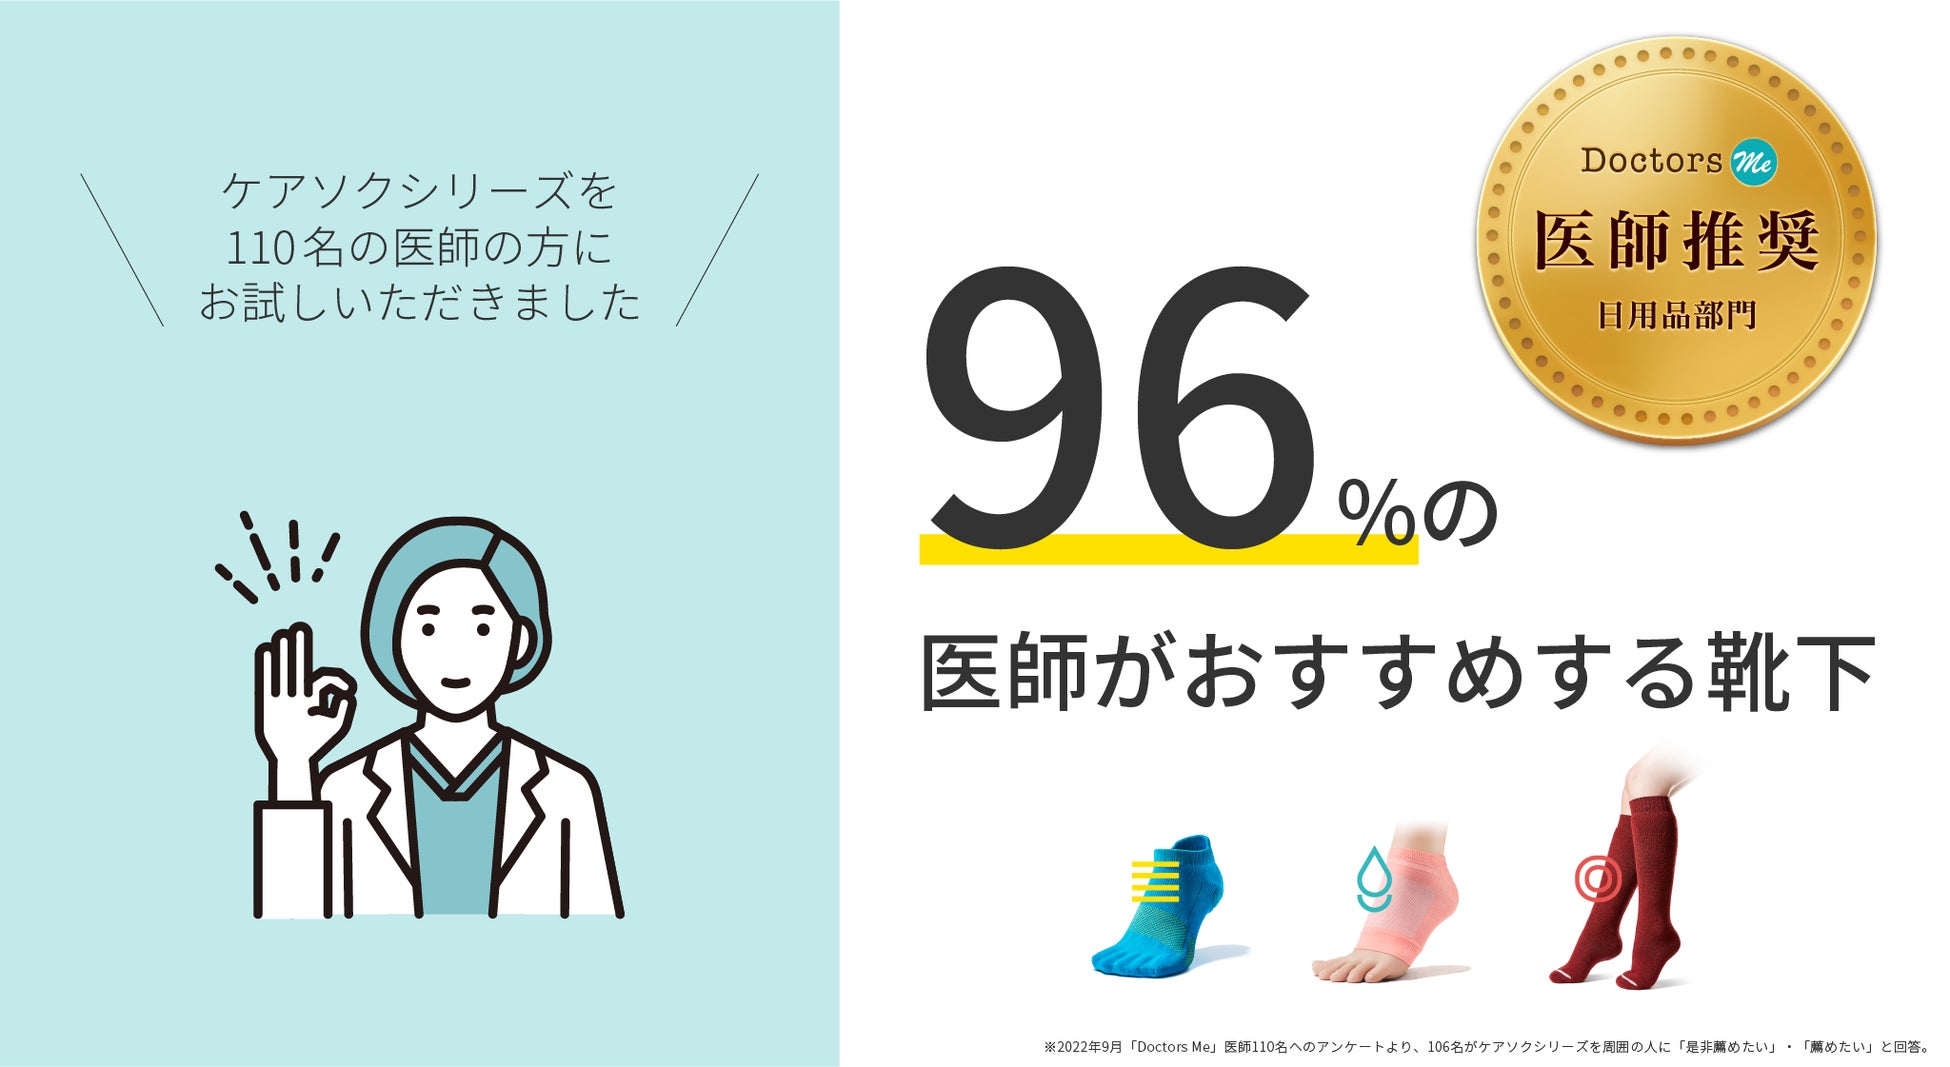 【96％の医師が薦める靴下】科学的エビデンスのある靴下〈ケアソクシリーズ〉が医師推奨マークを取得。第三者の医師からも高評価。